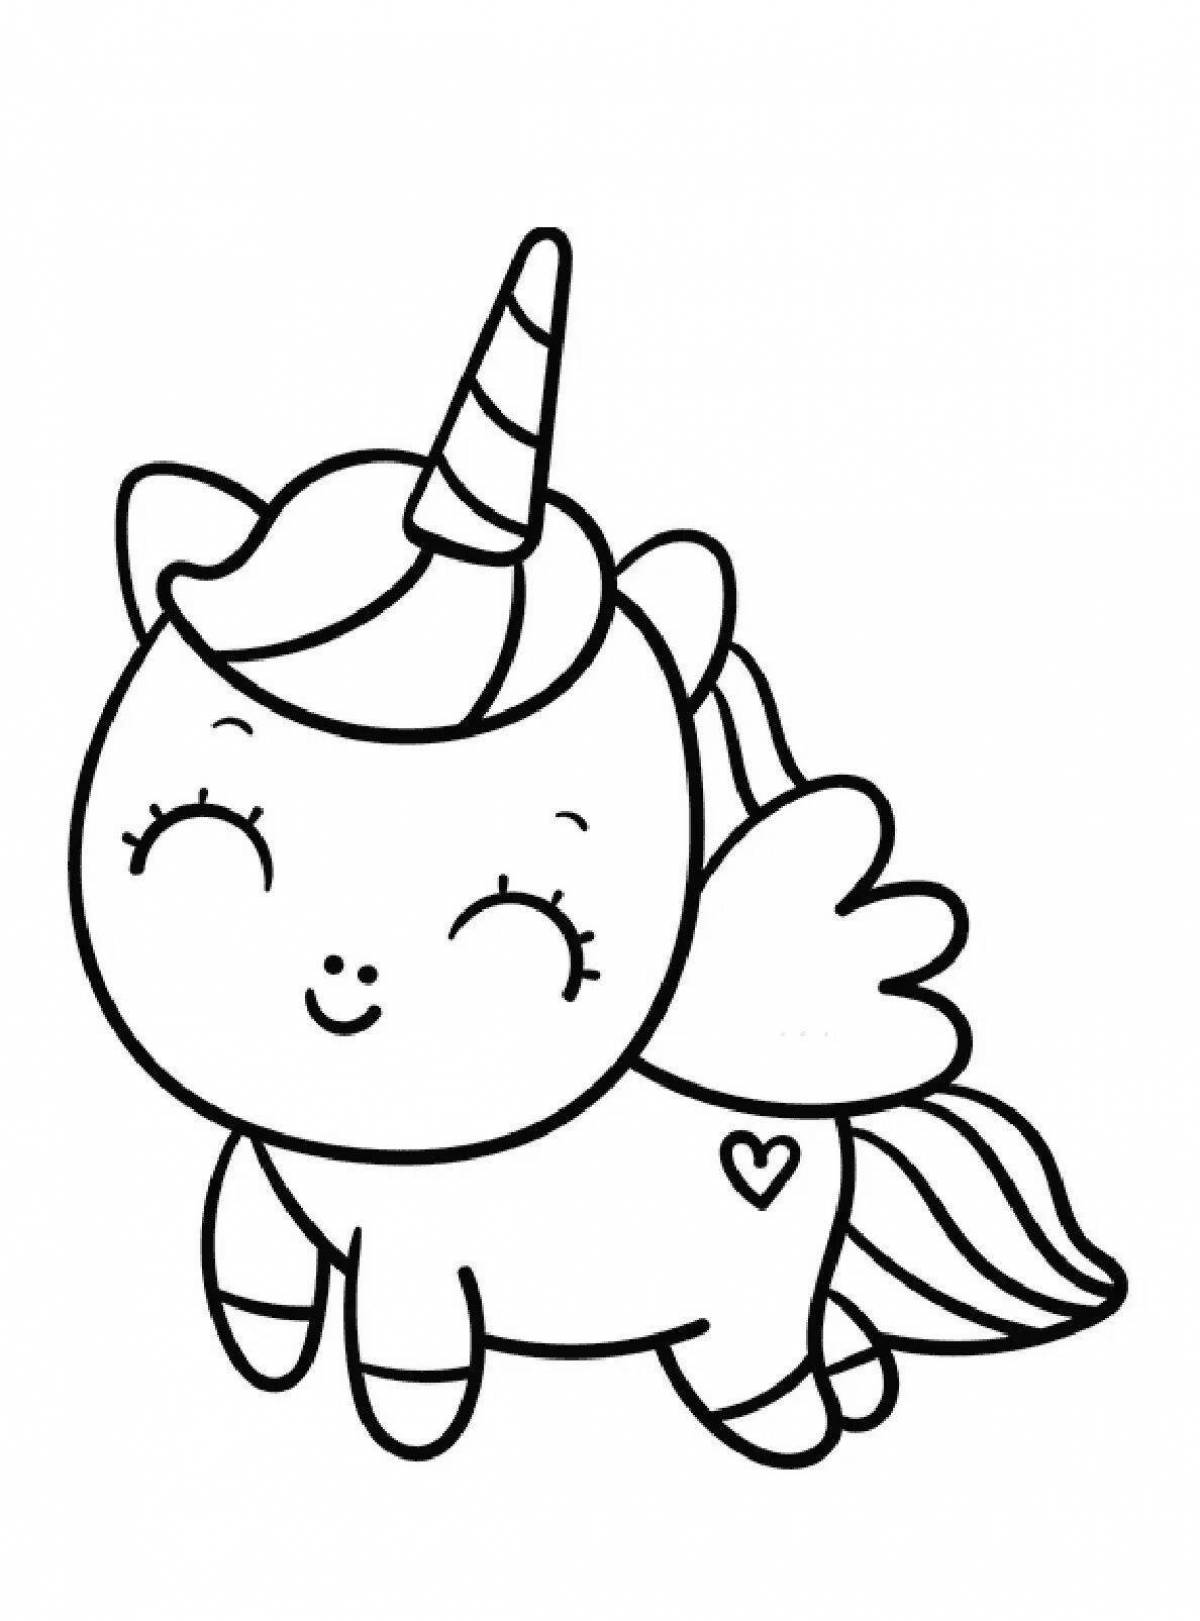 Fun coloring unicorn